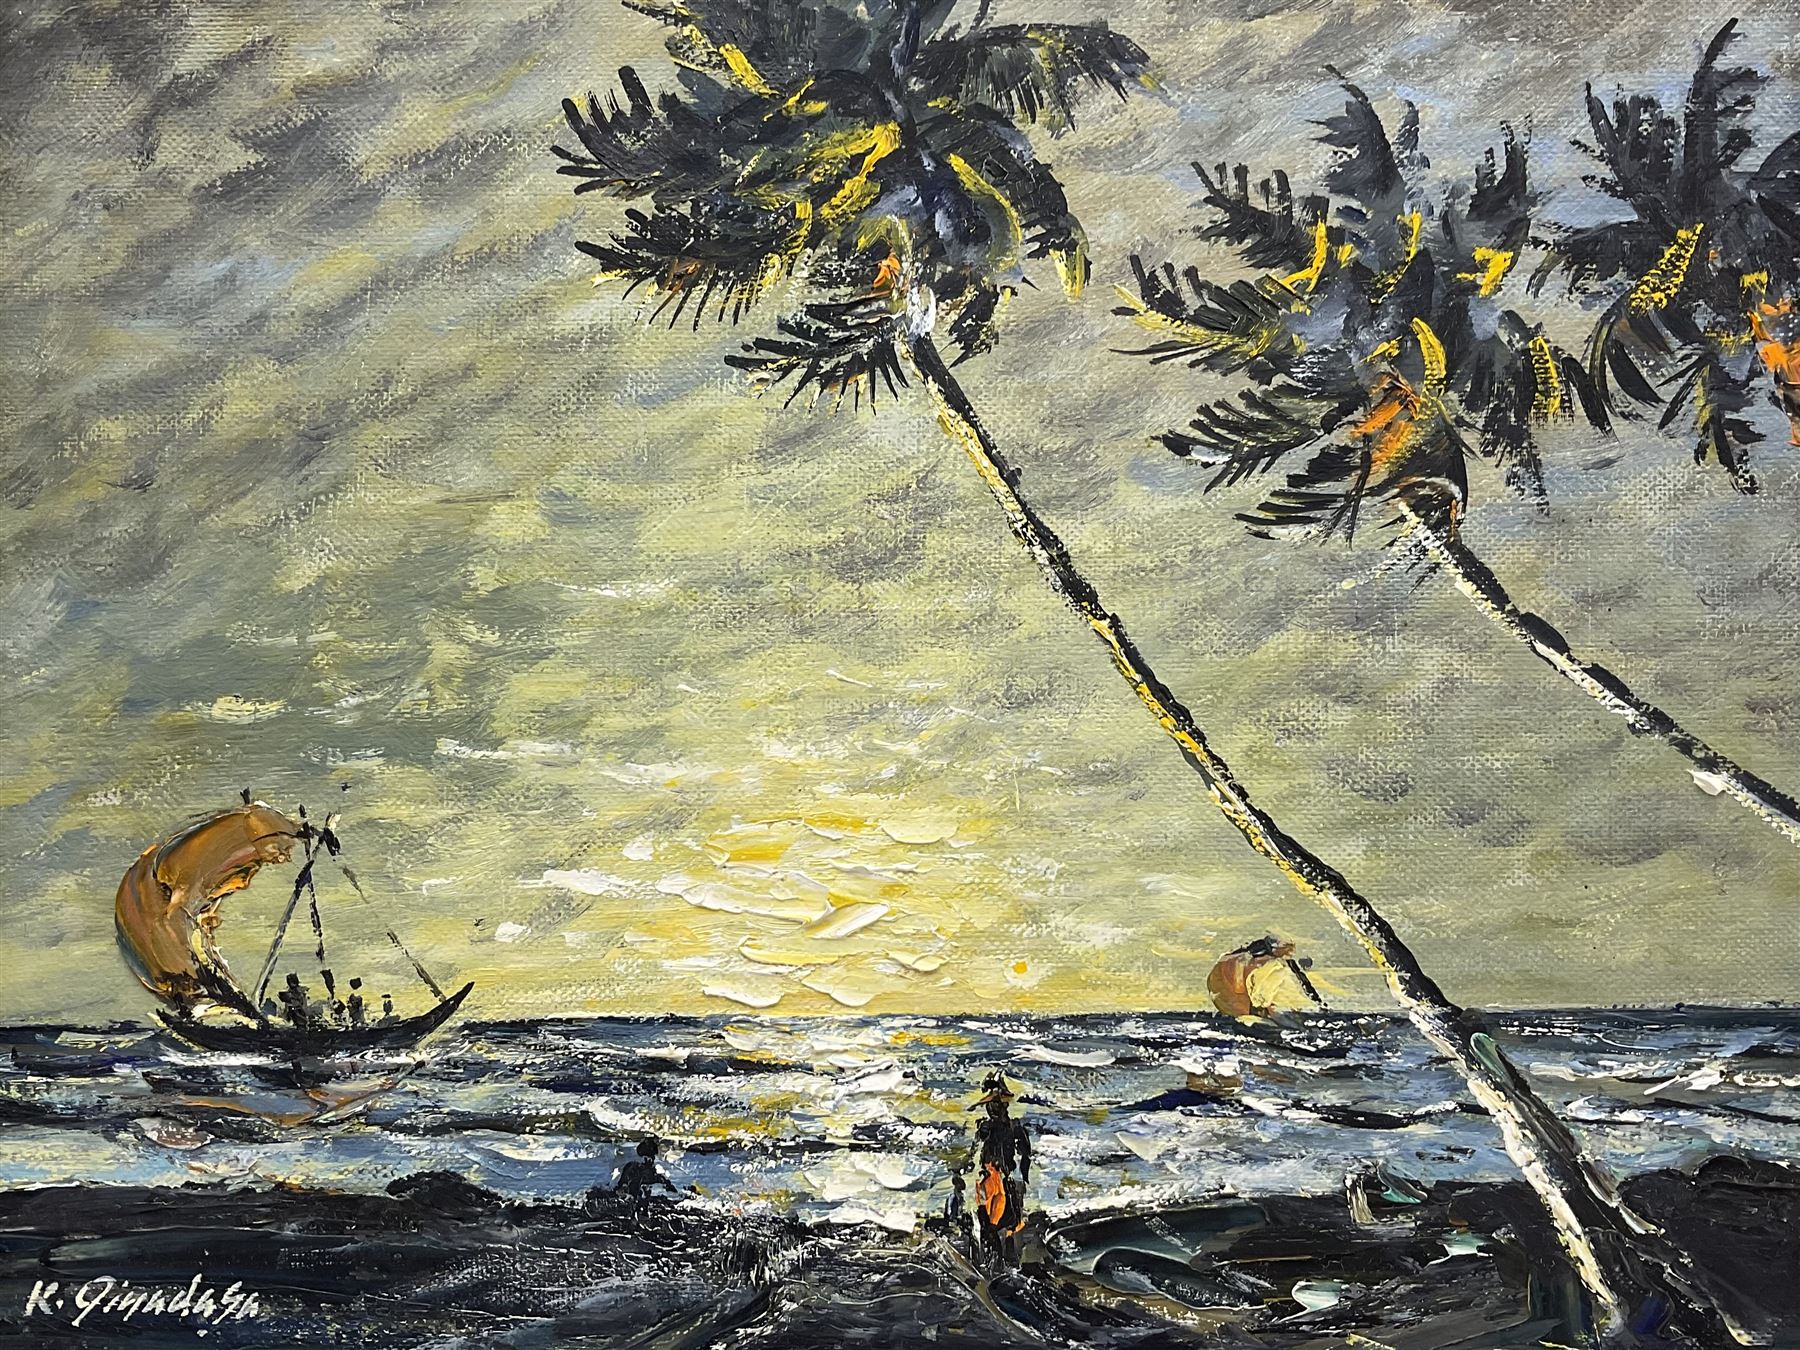 K Jinadasa (Sri Lankan 20th century): Sunset on the Coast